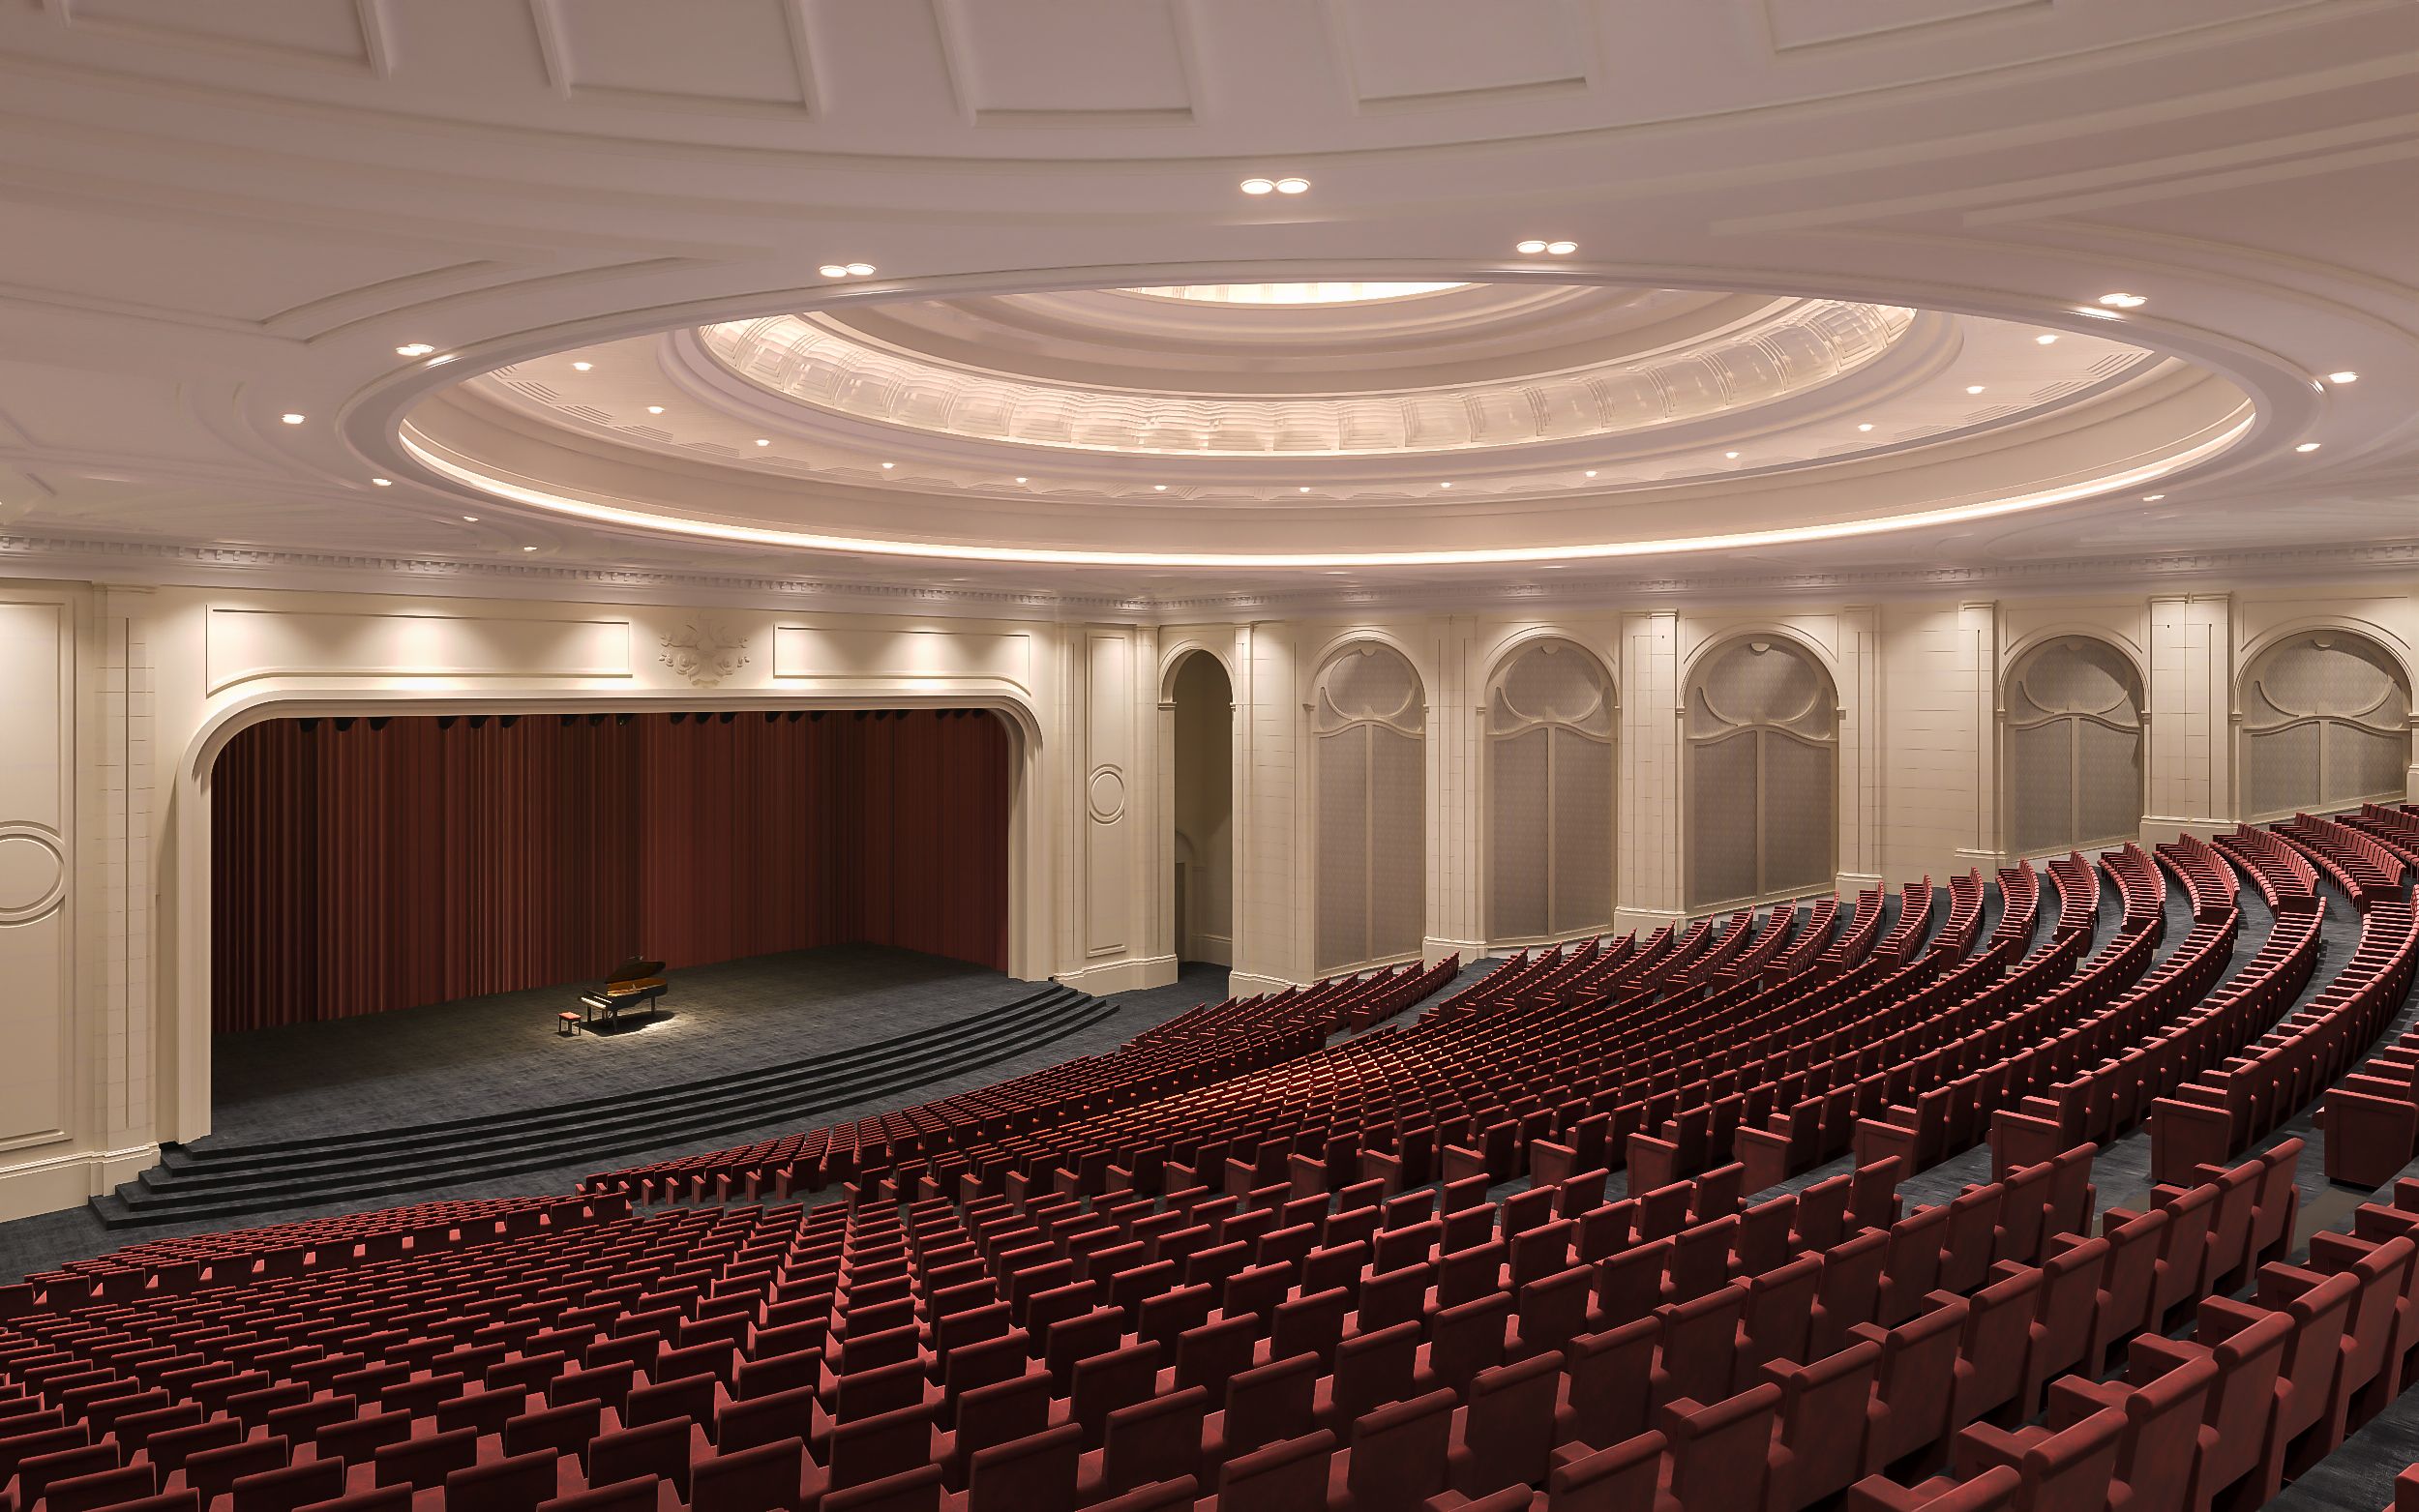 Bật mí thiết kế nhà hát sức chứa 10.000 người sắp hiện diện tại Vinhomes Ocean Park 2- Ảnh 3.